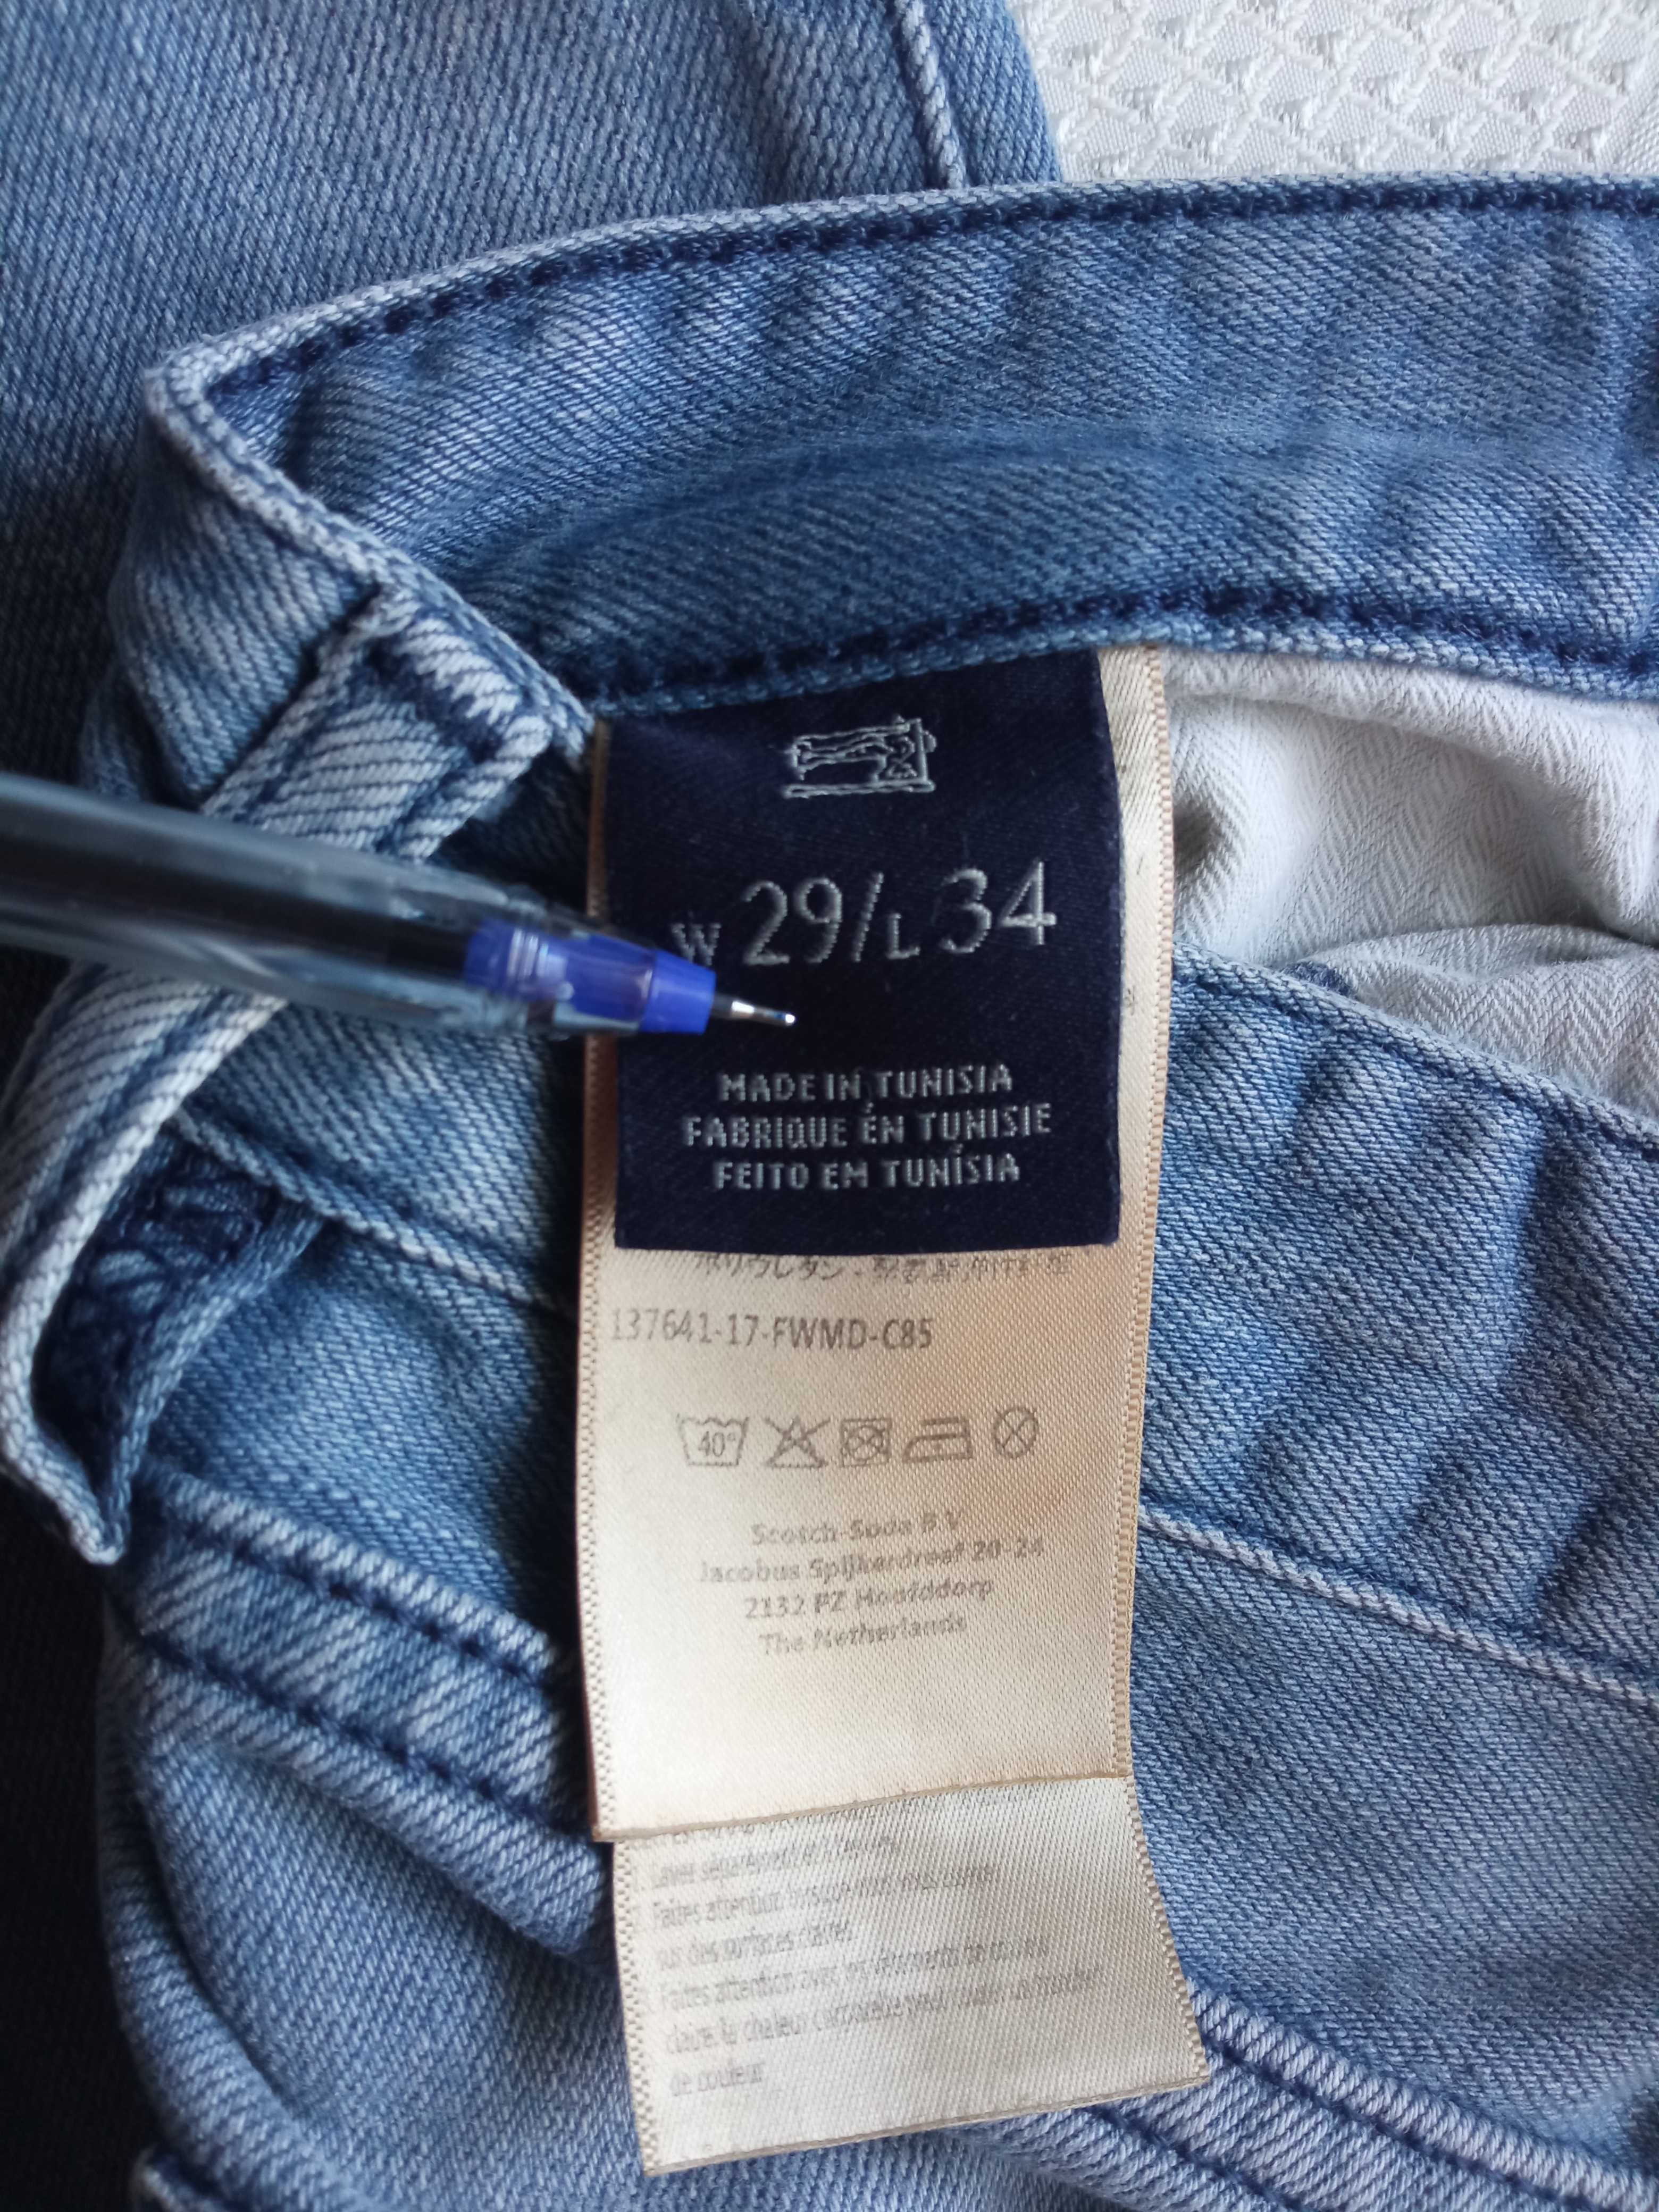 Scotch & Soda Ralston męskie spodnie jeans w29/L34 pas 80cm